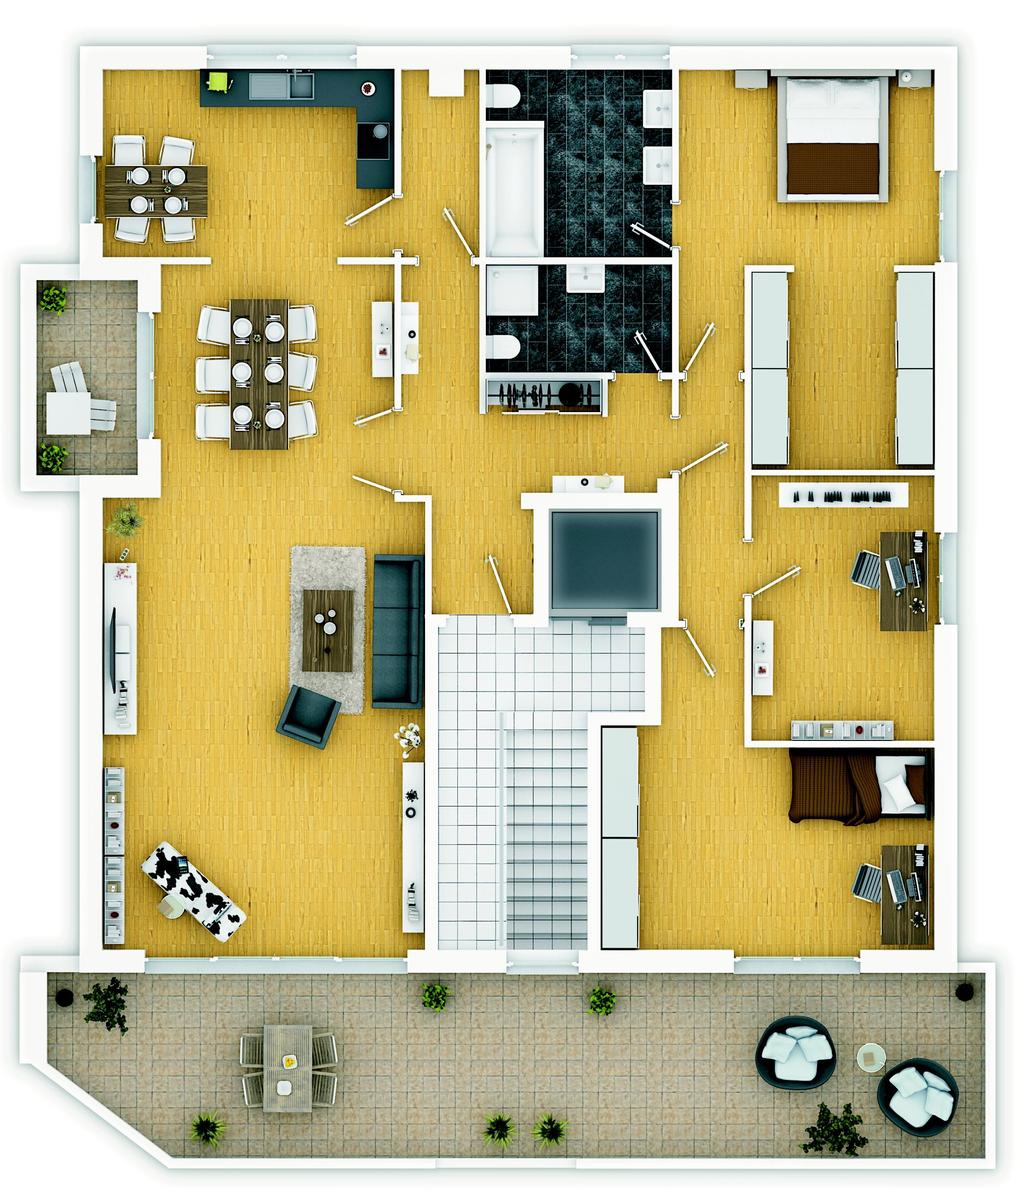 Haus 1 - Wohnung 6 Dachgeschoss Wohnen / Essen Eltern / Ankleide Kind Arbeiten 48,53 m² 21,26 m² 18,66 m² 11,51 m² Küche